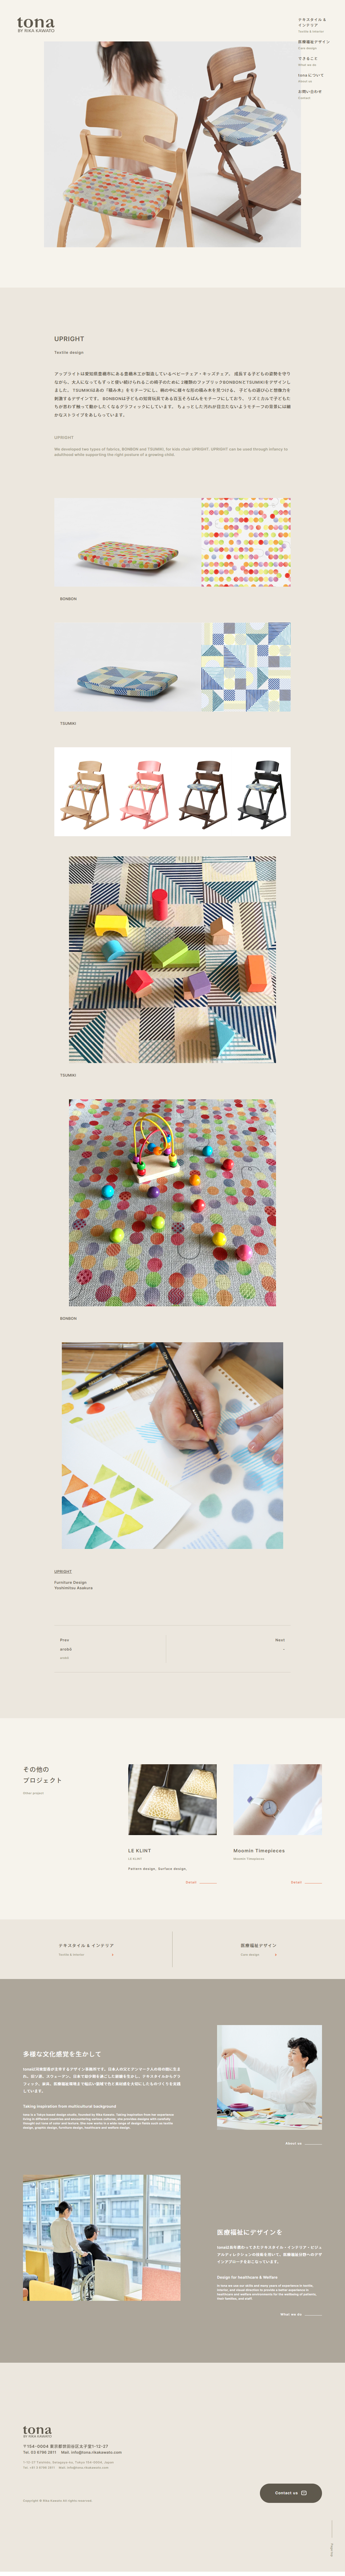 デザイン・制作会社・印刷 コーポレートサイト制作 WEBデザイン参考ギャラリー tona by RIKA KAWATO